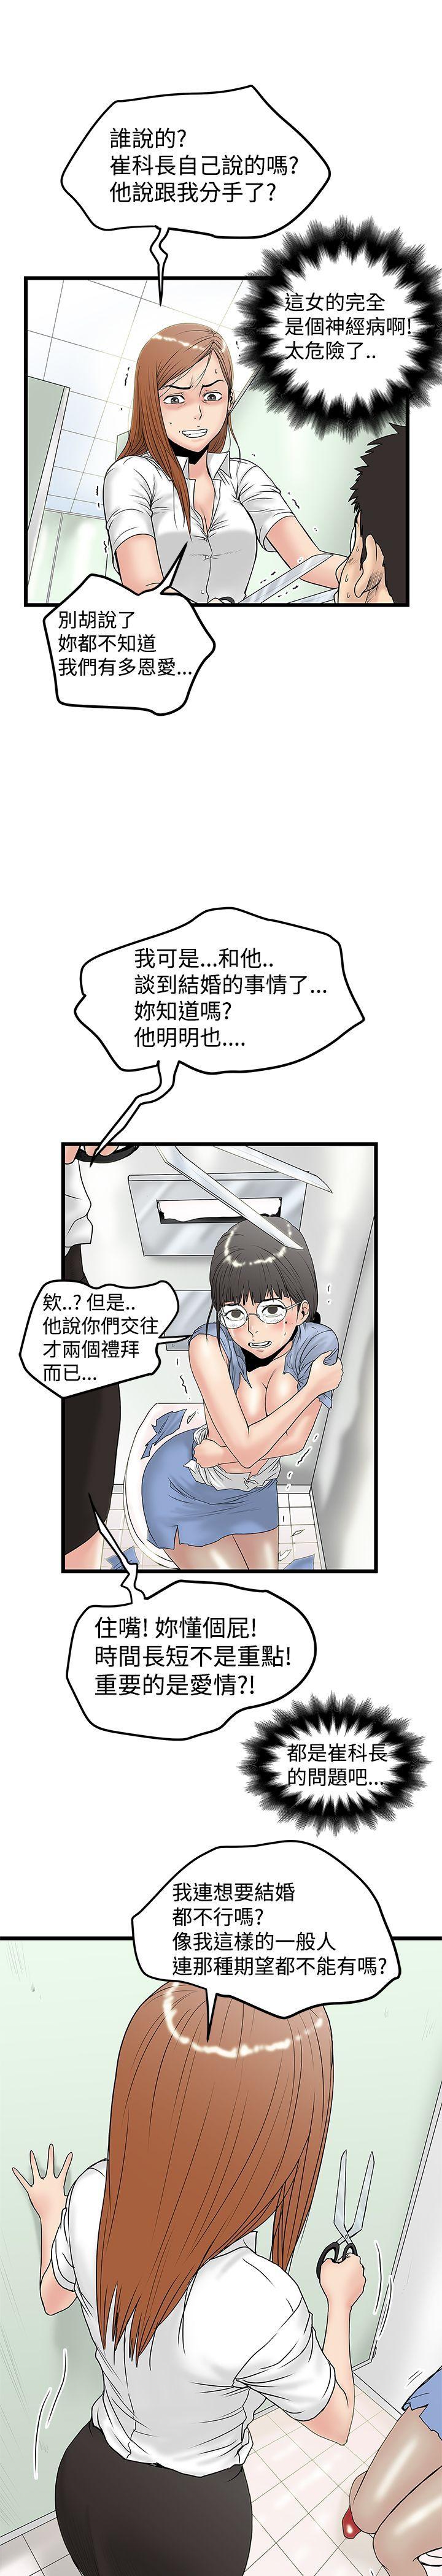 韩国污漫画 想像狂熱 第14话 13